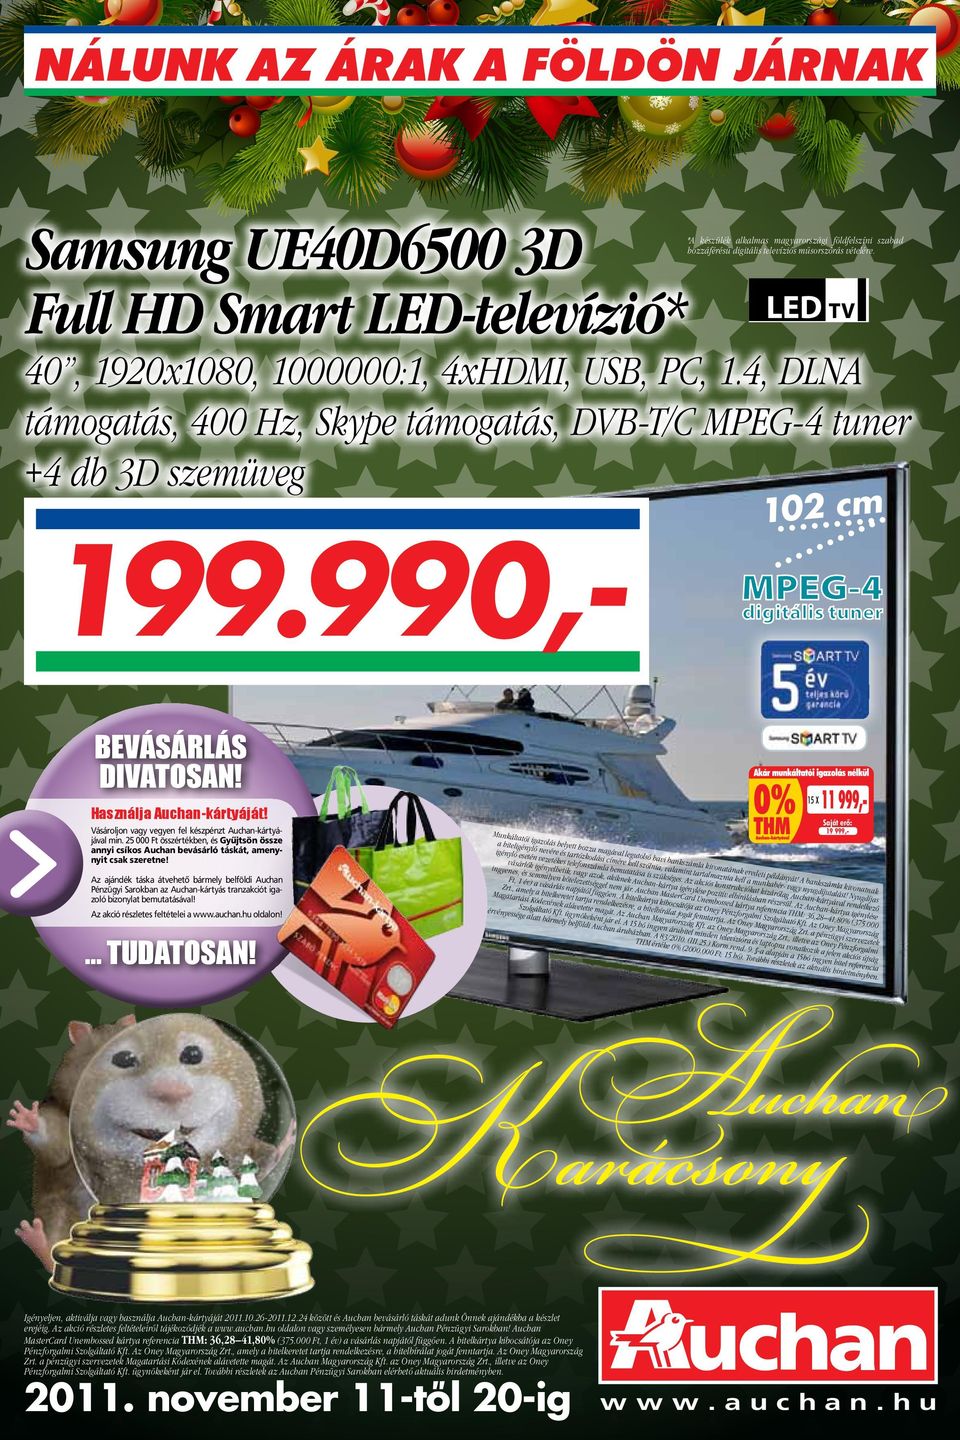 Samsung UE40D6500 3D Full HD Smart LED-televízió* - PDF Ingyenes letöltés